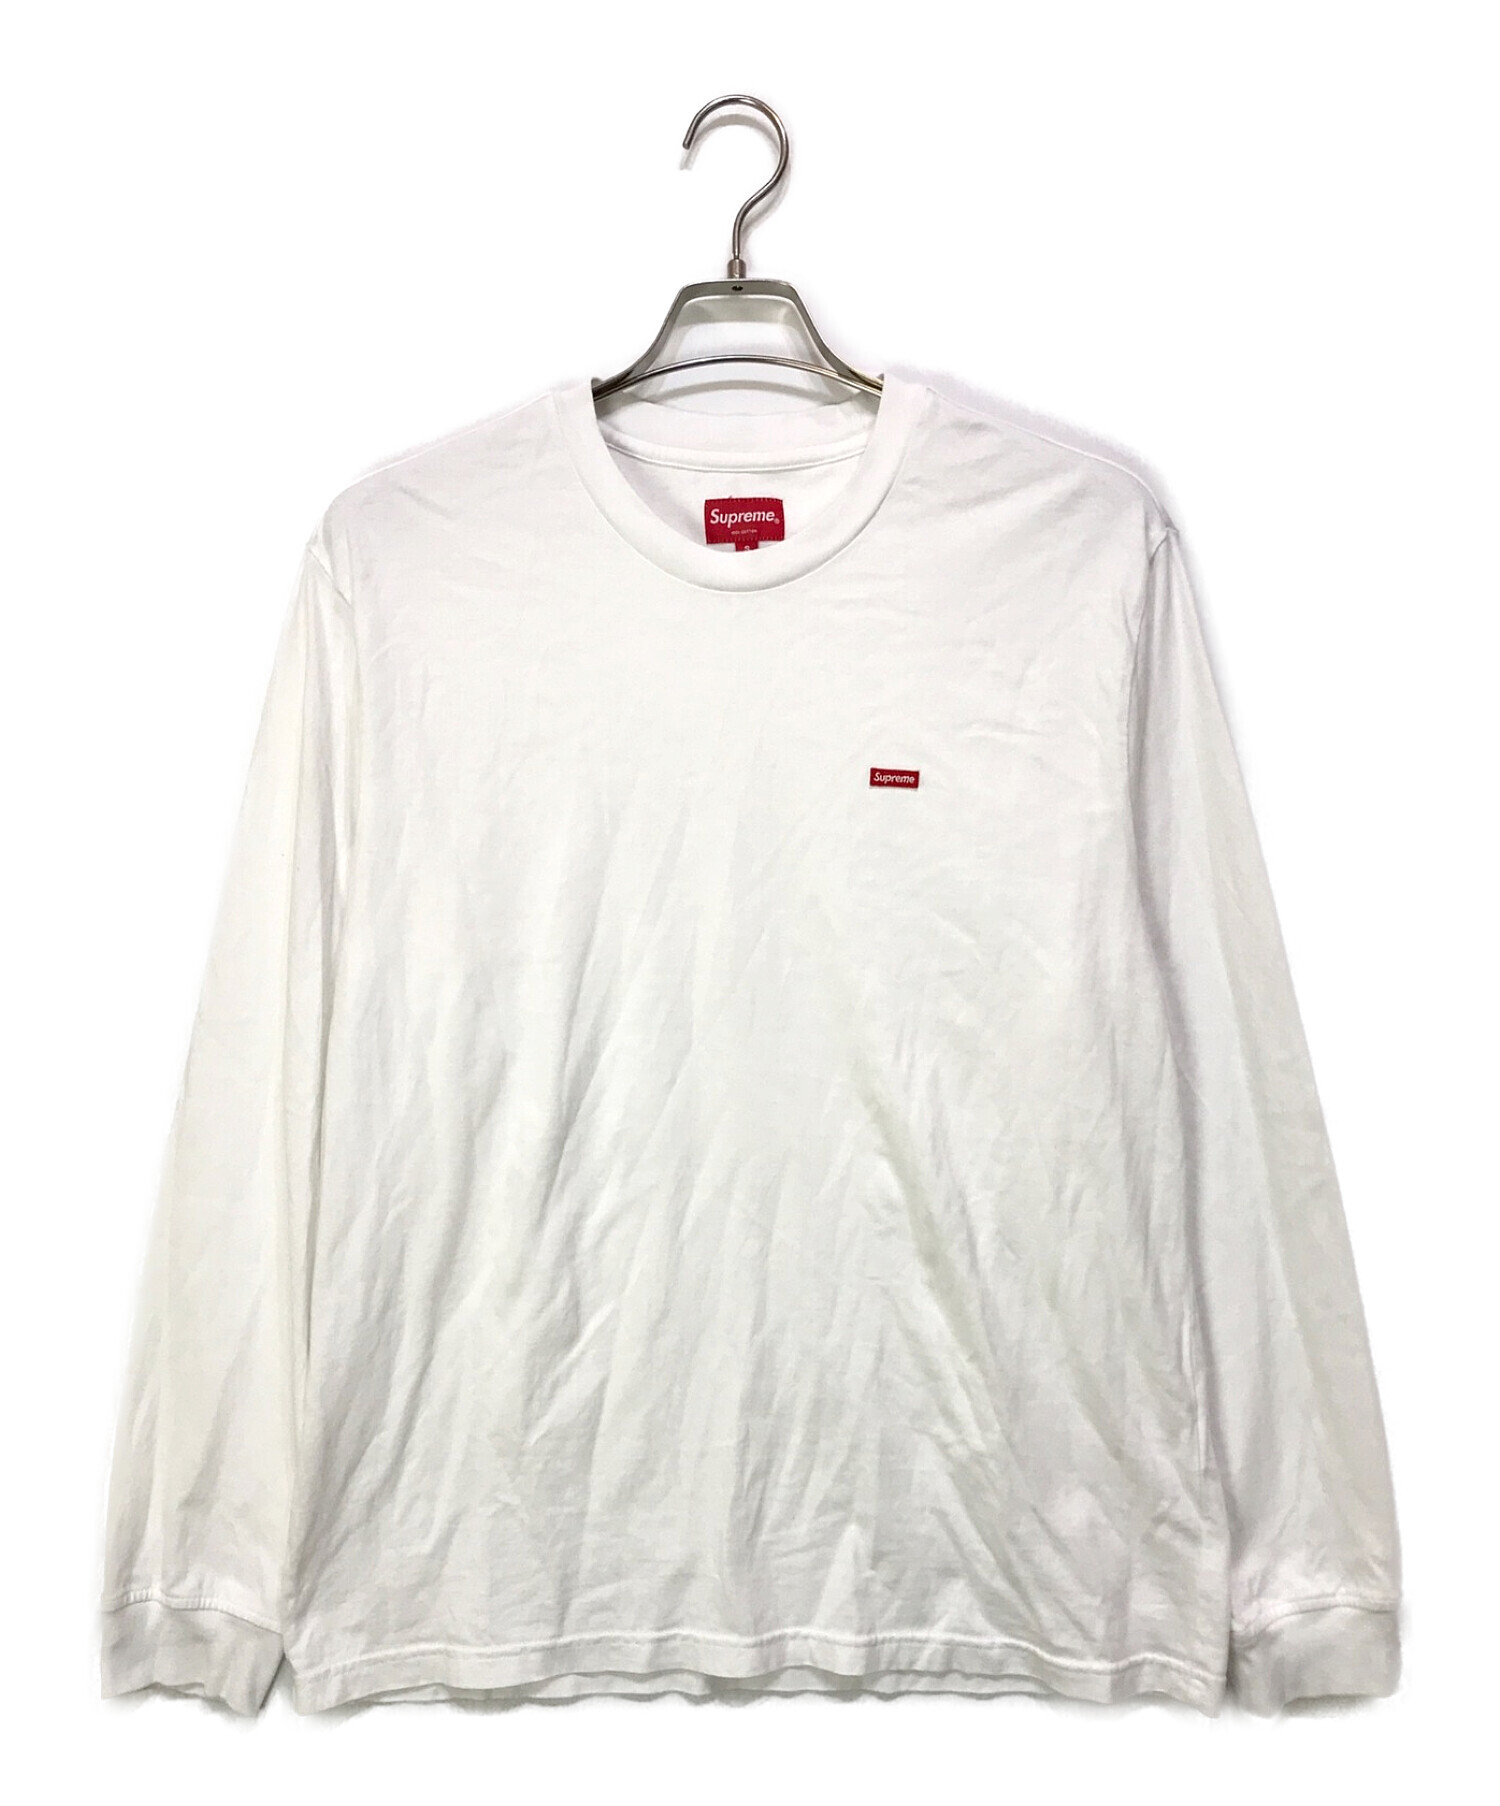 Supreme Small Box Shirt White Sサイズ